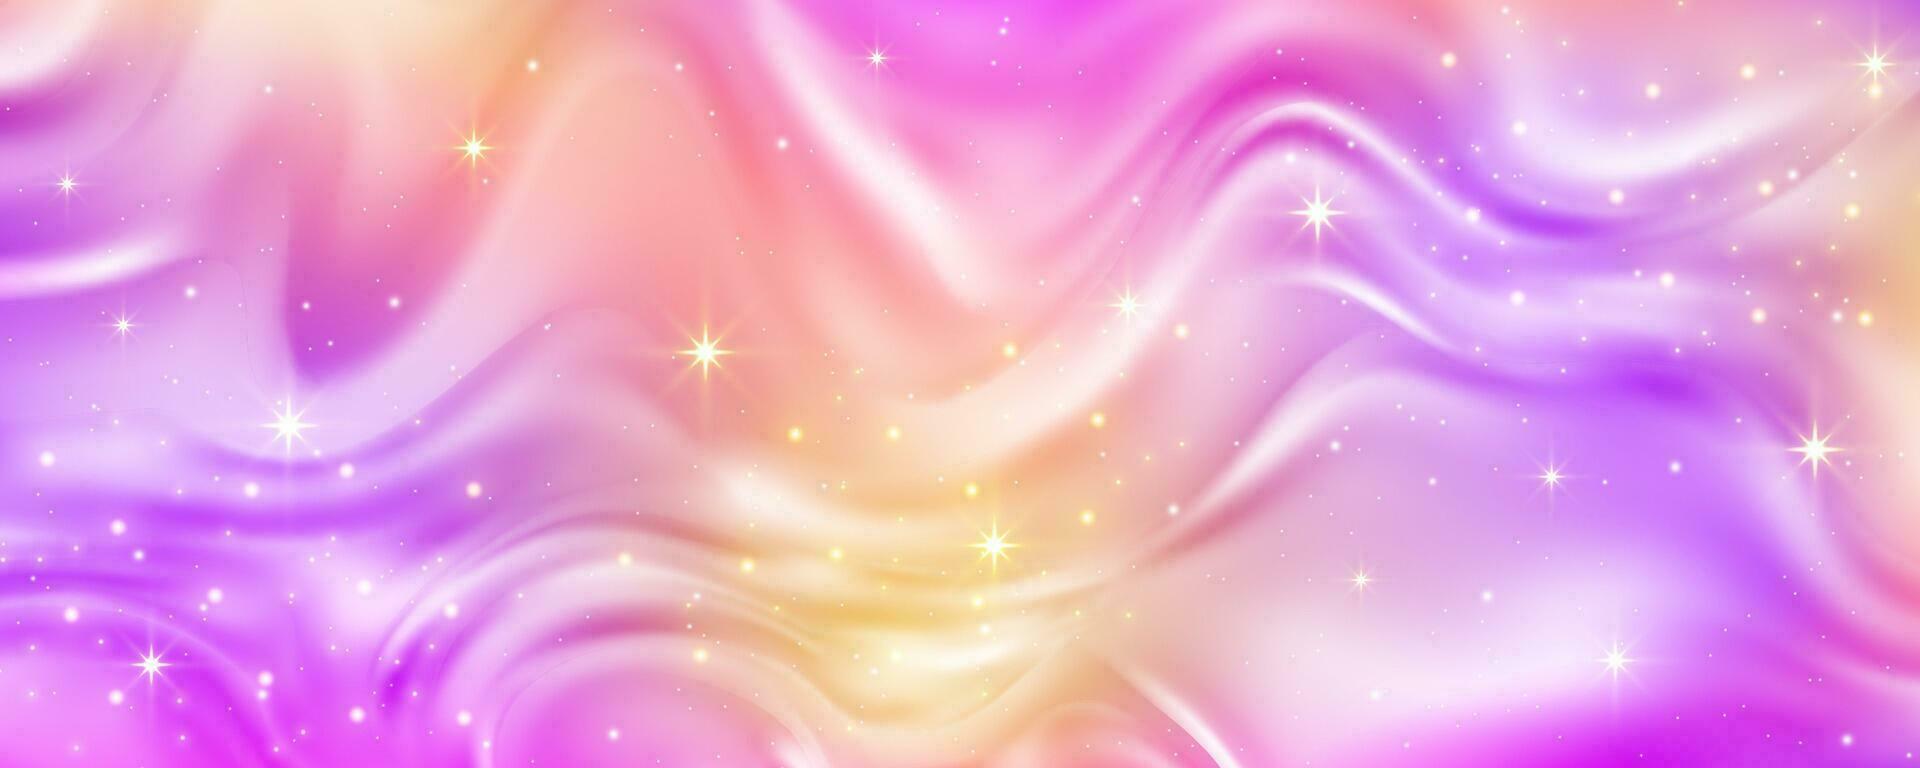 astratto fluido sfondo. viola e rosa neon colori pendenza con stelle e scintille ondulato strutturato liquido design. vettore illustrazione